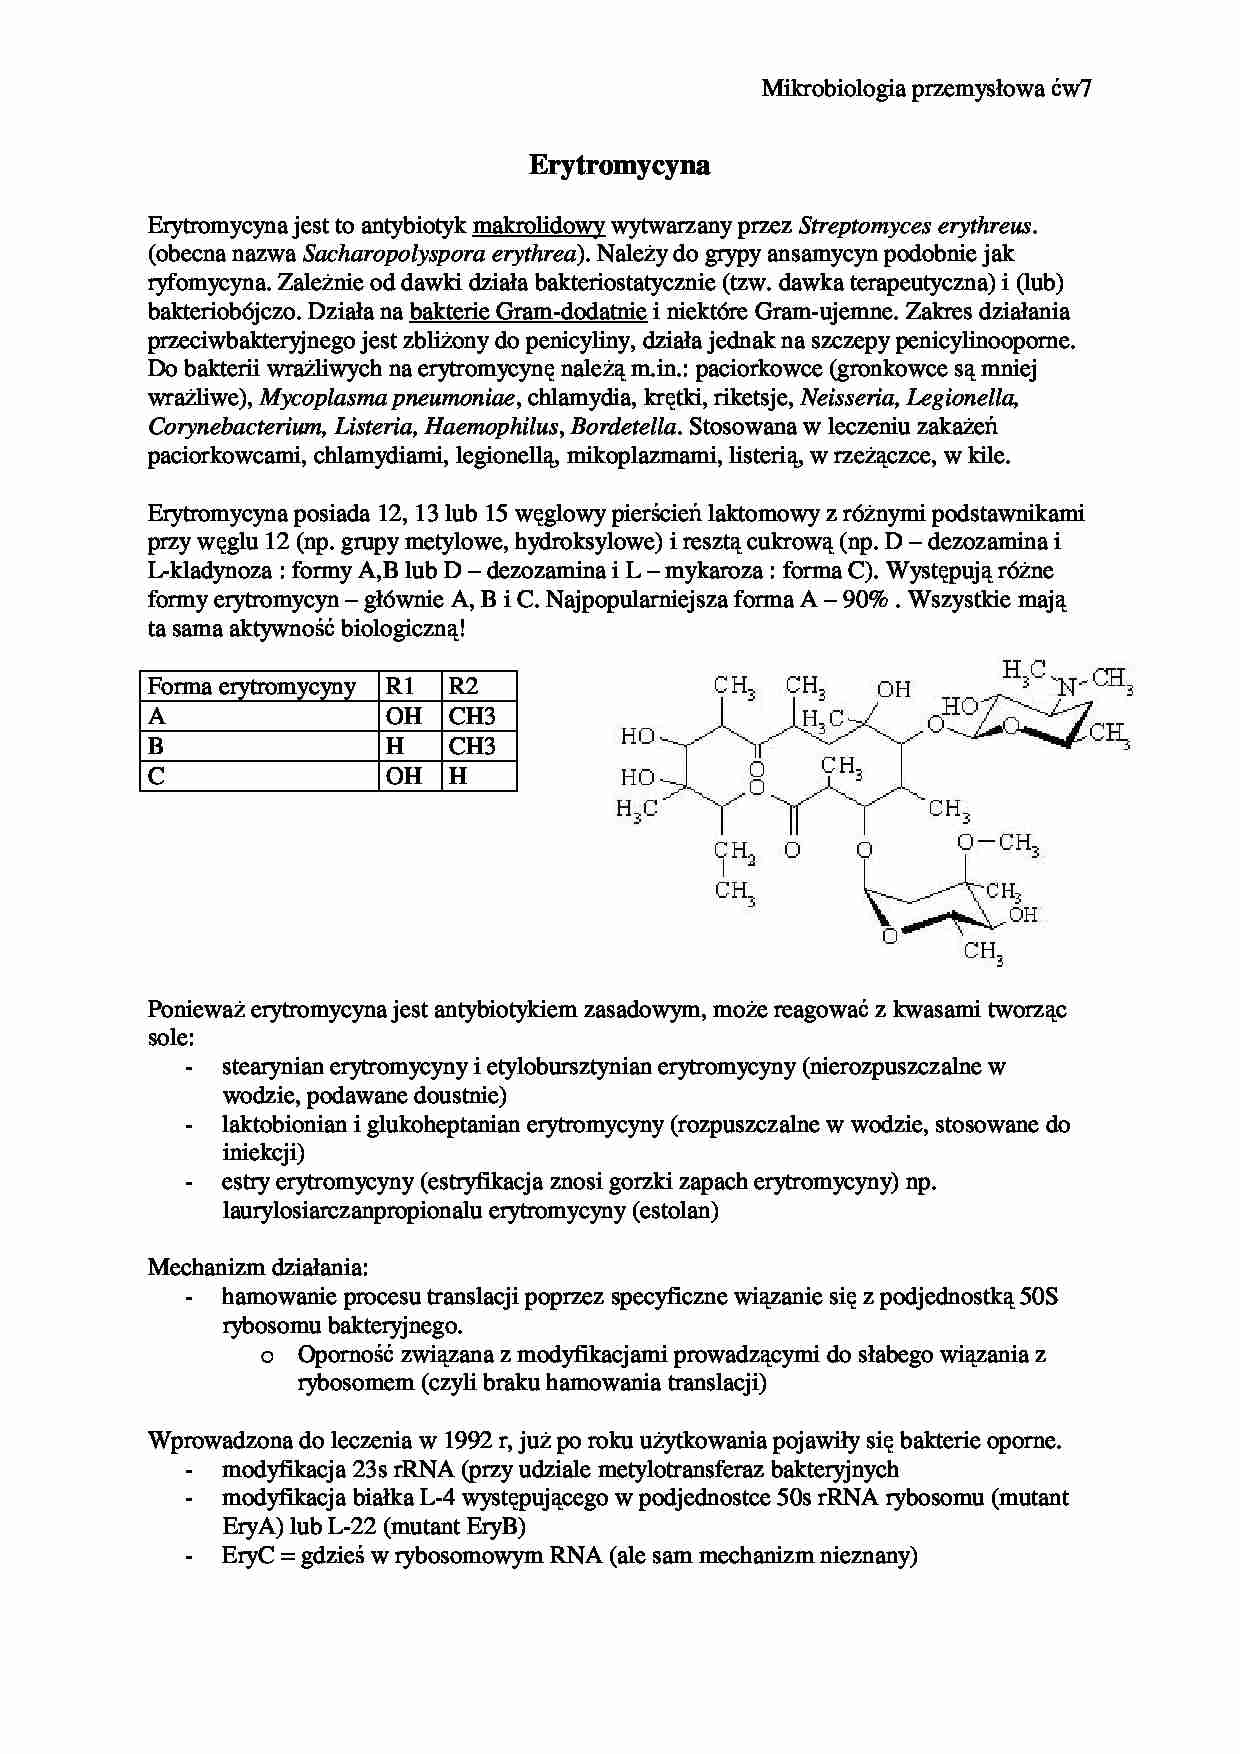 Erytromycyna-opracowanie - strona 1